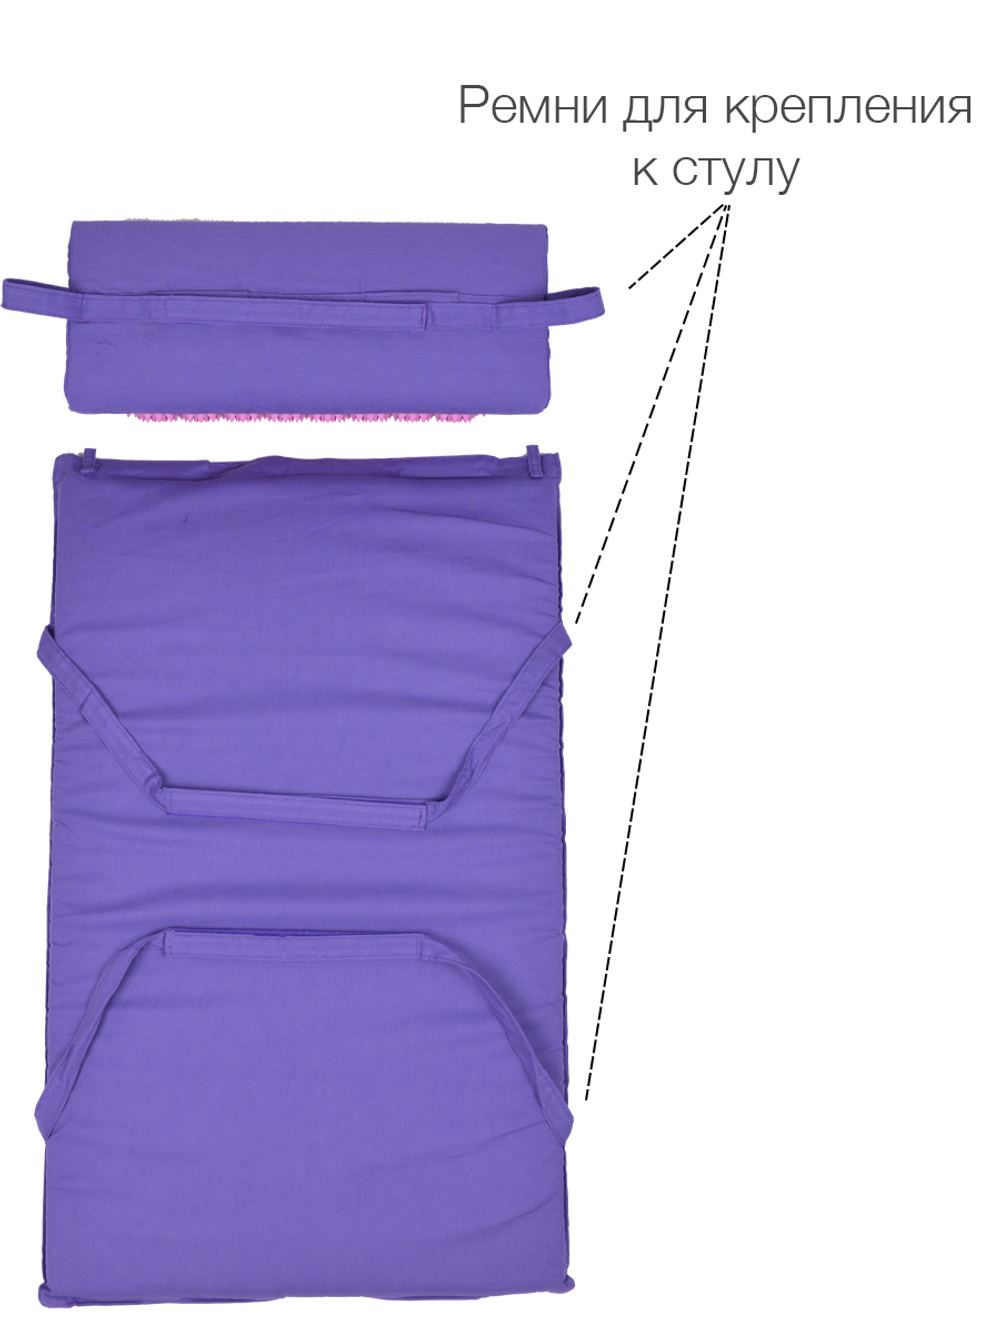 Массажный набор акупунктурный коврик + подушка Comfox (фиолетовый)